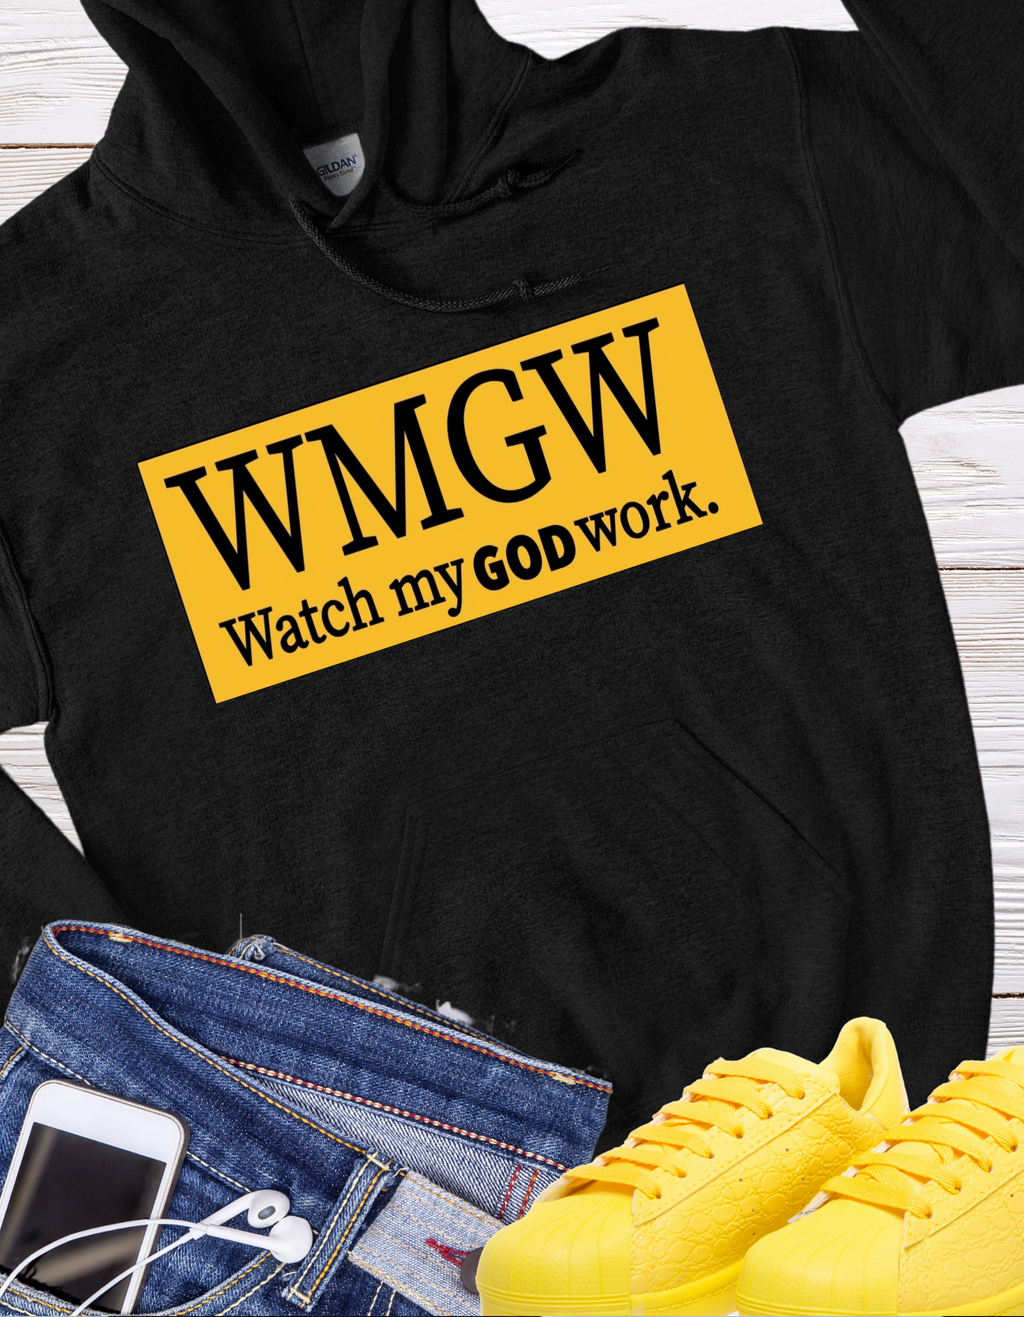 WMGW Gold Hoodie Sweatshirt.